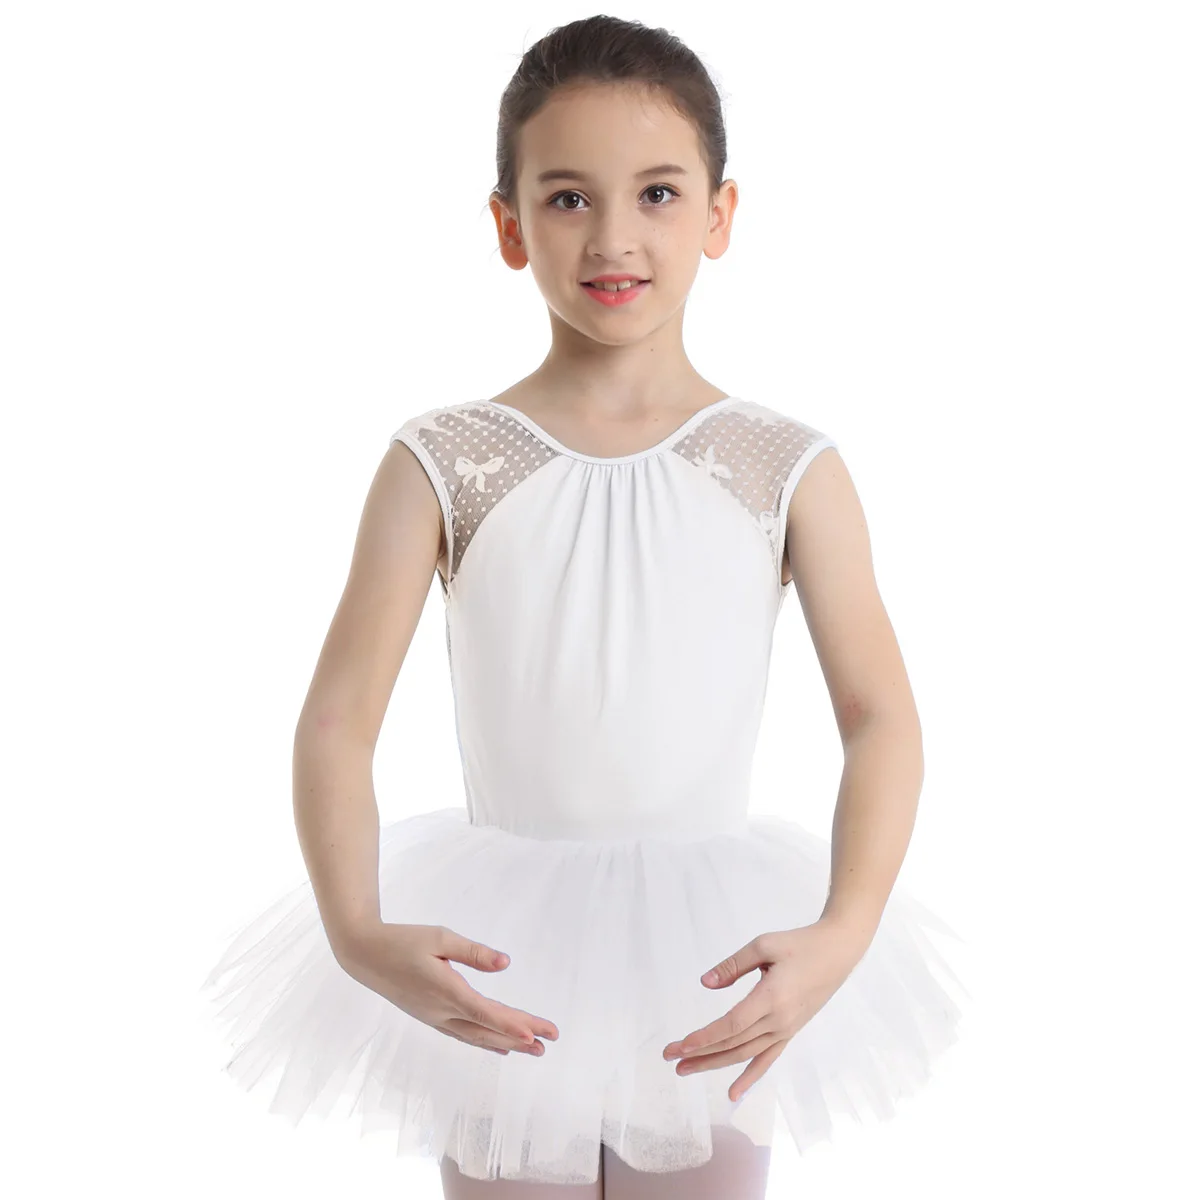 IIXPIN/детское балетное платье-пачка для девочек кружевное платье без рукавов с u-образной спинкой, балетное танцевальное гимнастическое трико, платье-пачка для девочек - Цвет: White